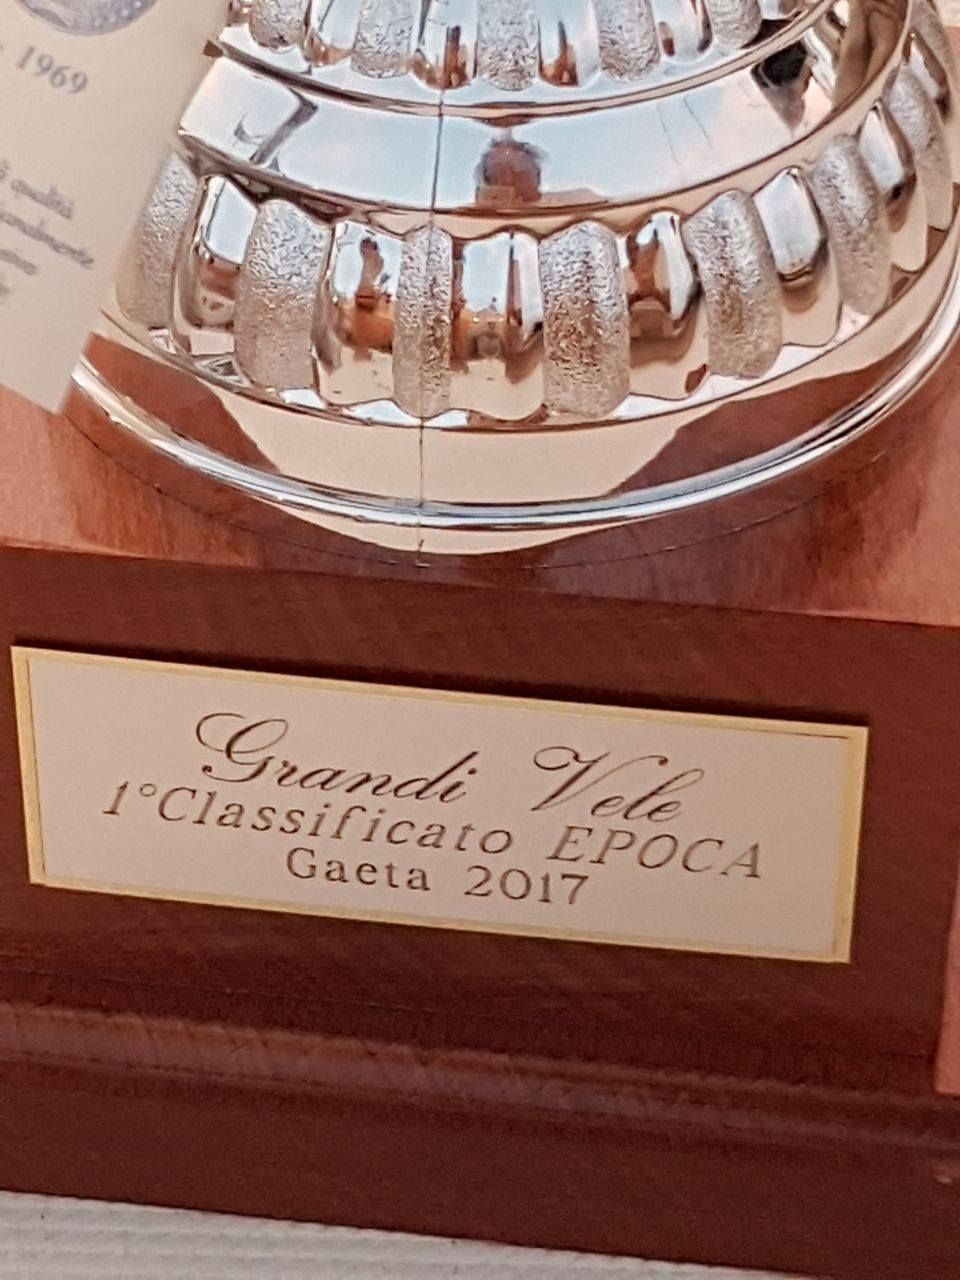 Le grandi vele di Gaeta 2017: abbiamo vinto!